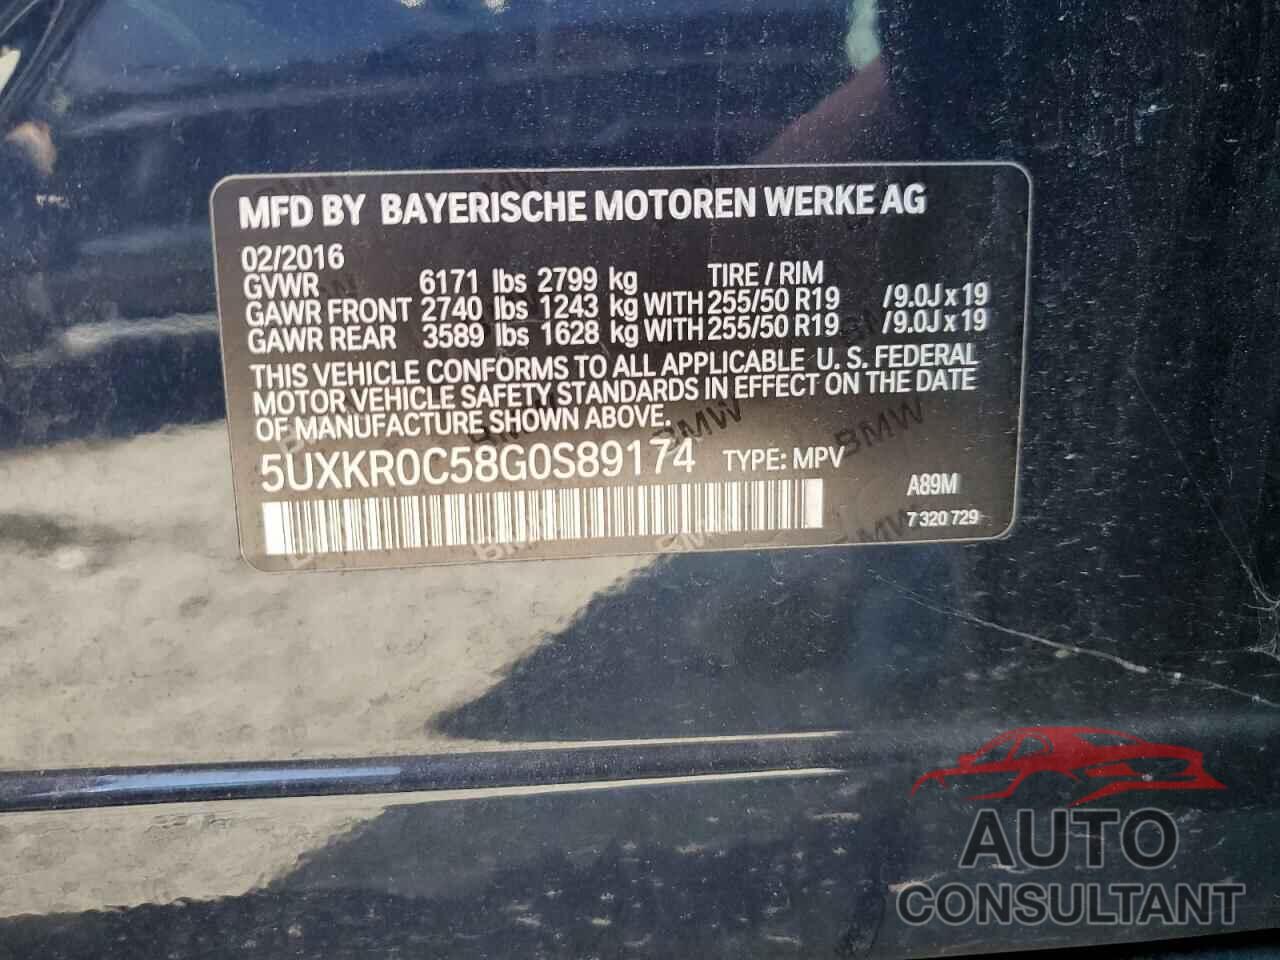 BMW X5 2016 - 5UXKR0C58G0S89174